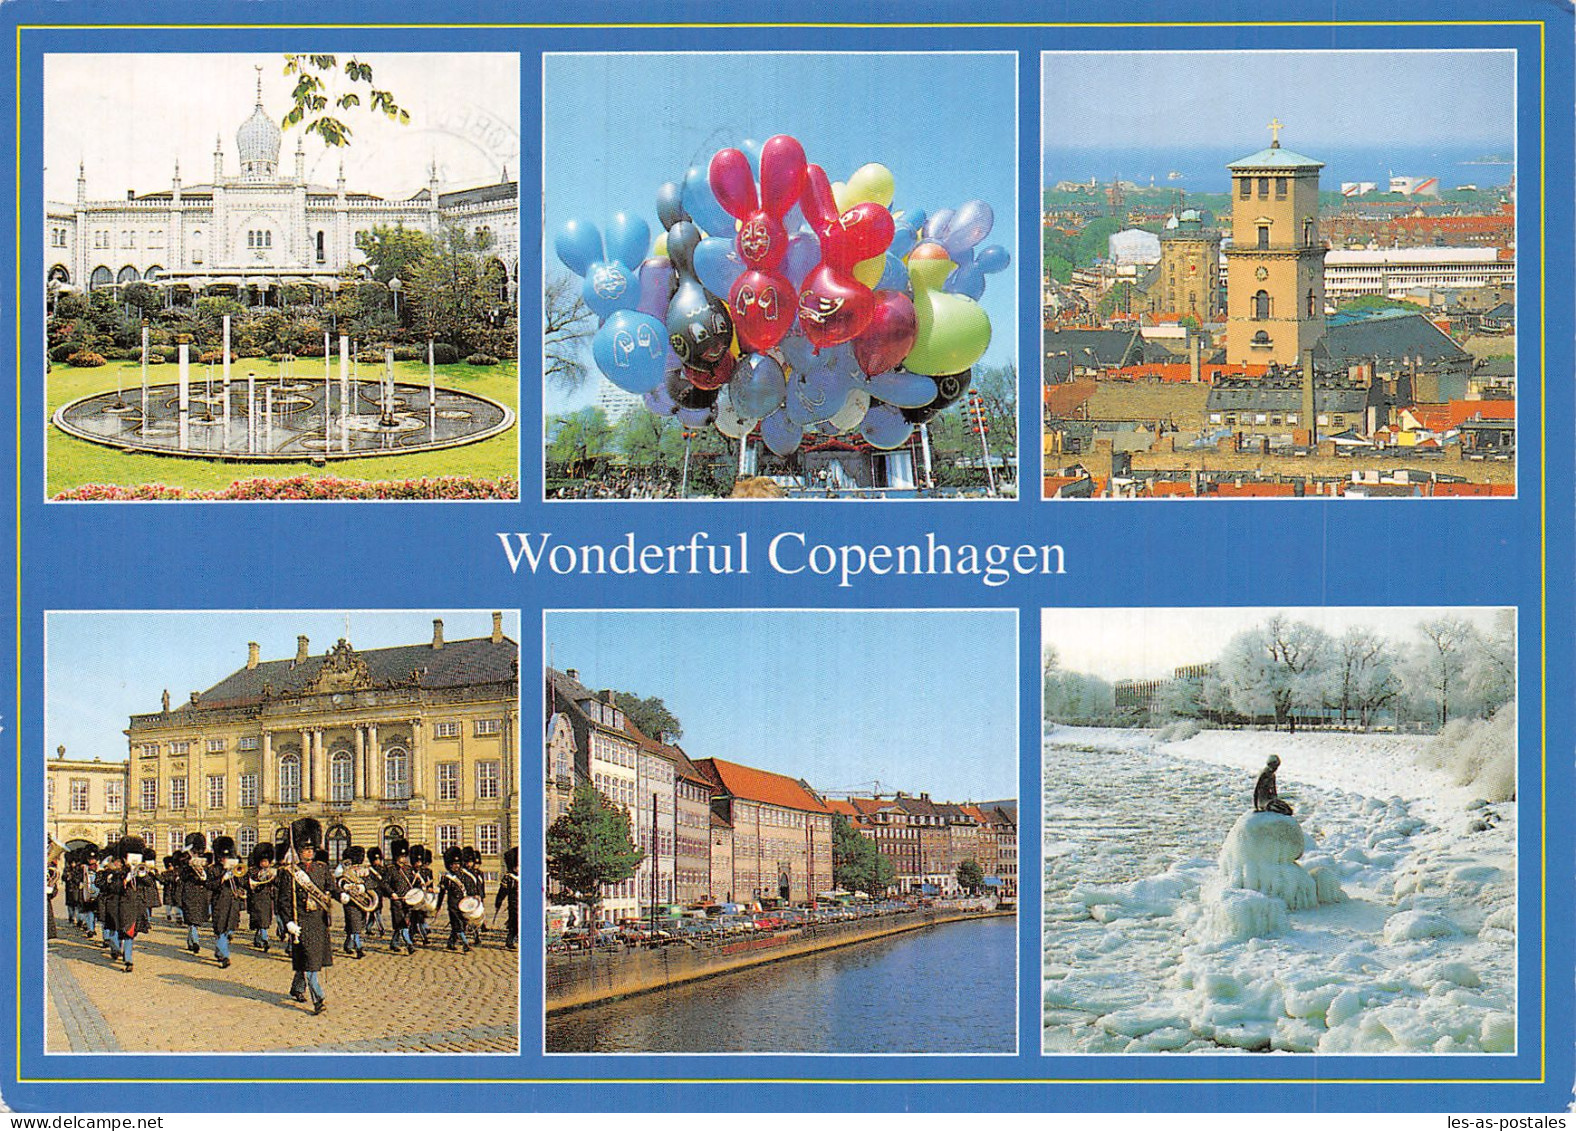 DANEMARK COPENHAGEN - Denmark